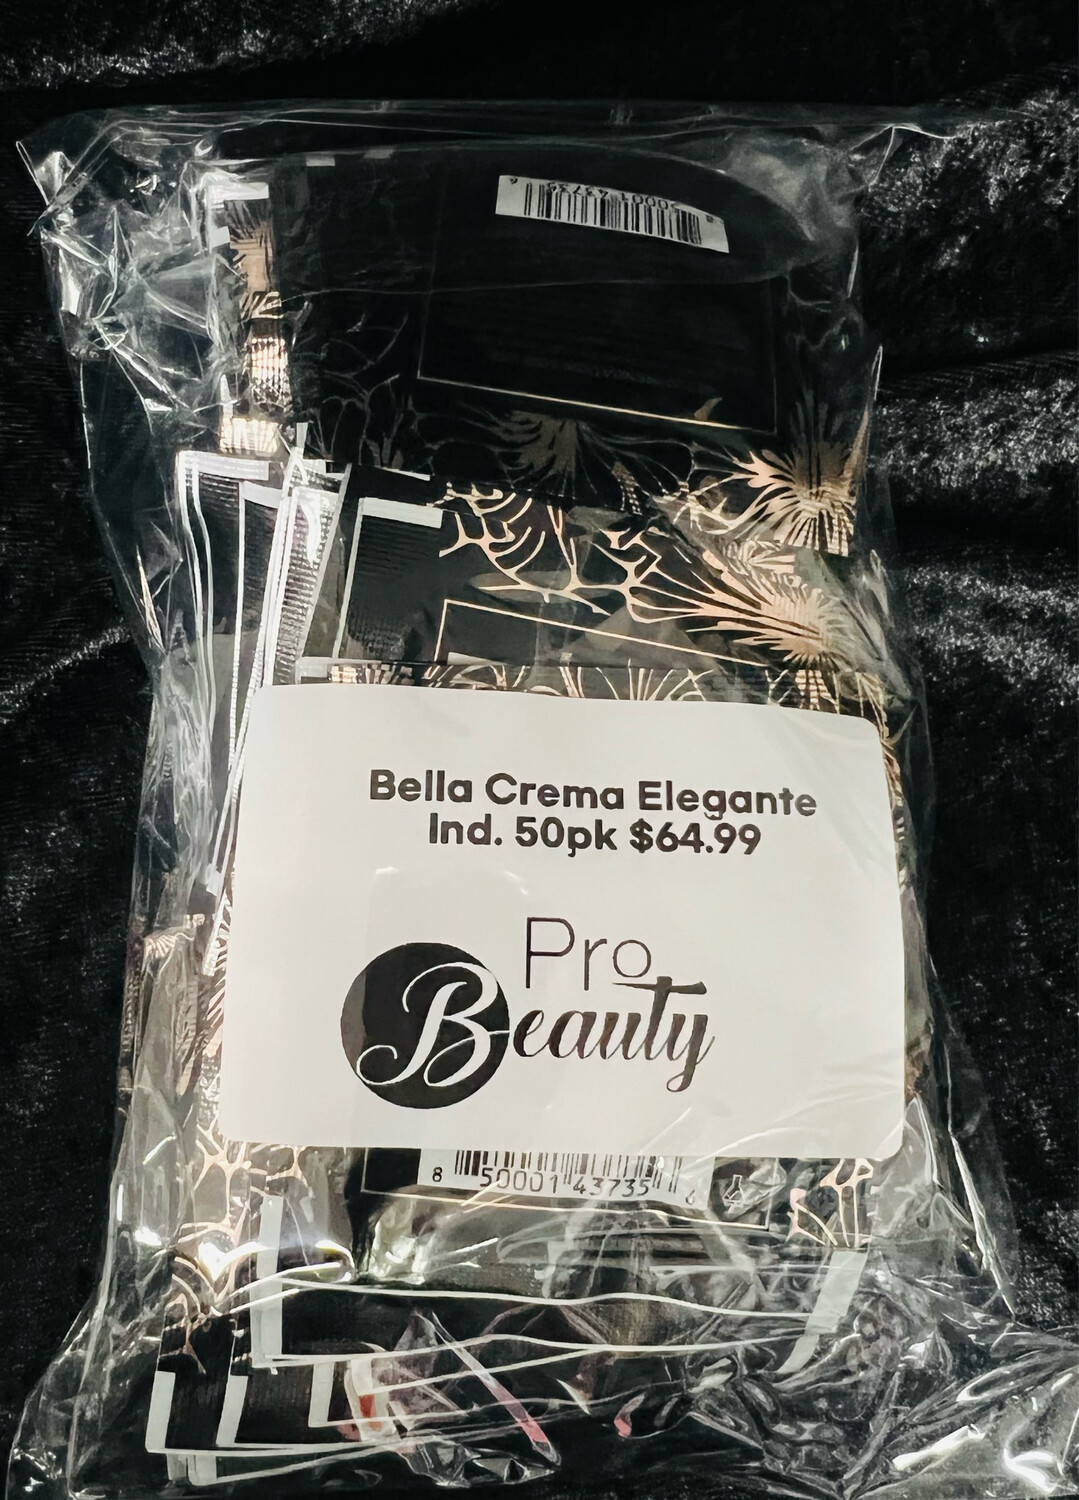 Bella Crema Elegante Ind. 50pk